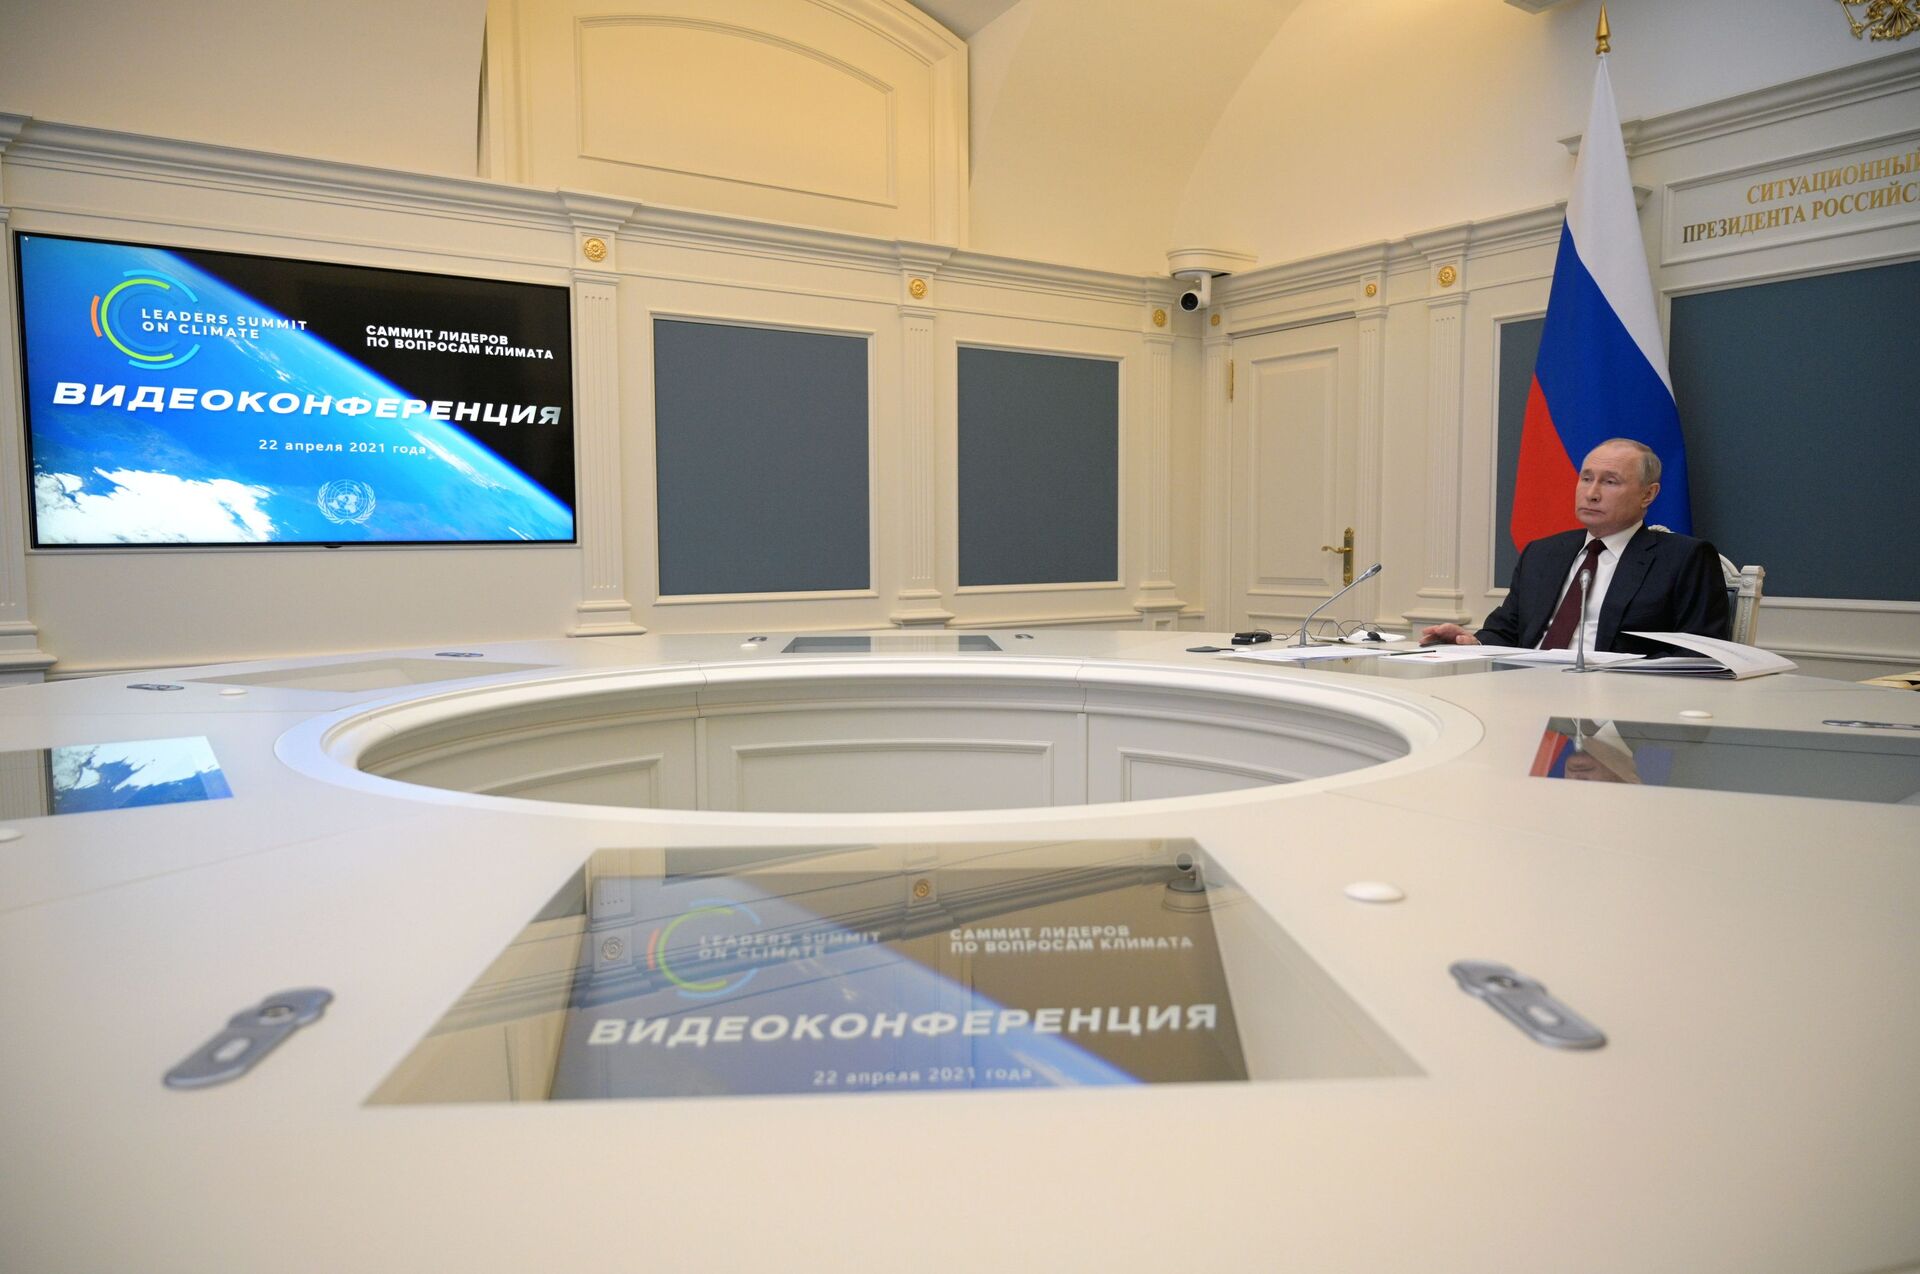 'EUA esperam trabalhar com Rússia': Biden muito 'animado' com apelo de Putin na Cúpula do Clima - Sputnik Brasil, 1920, 23.04.2021